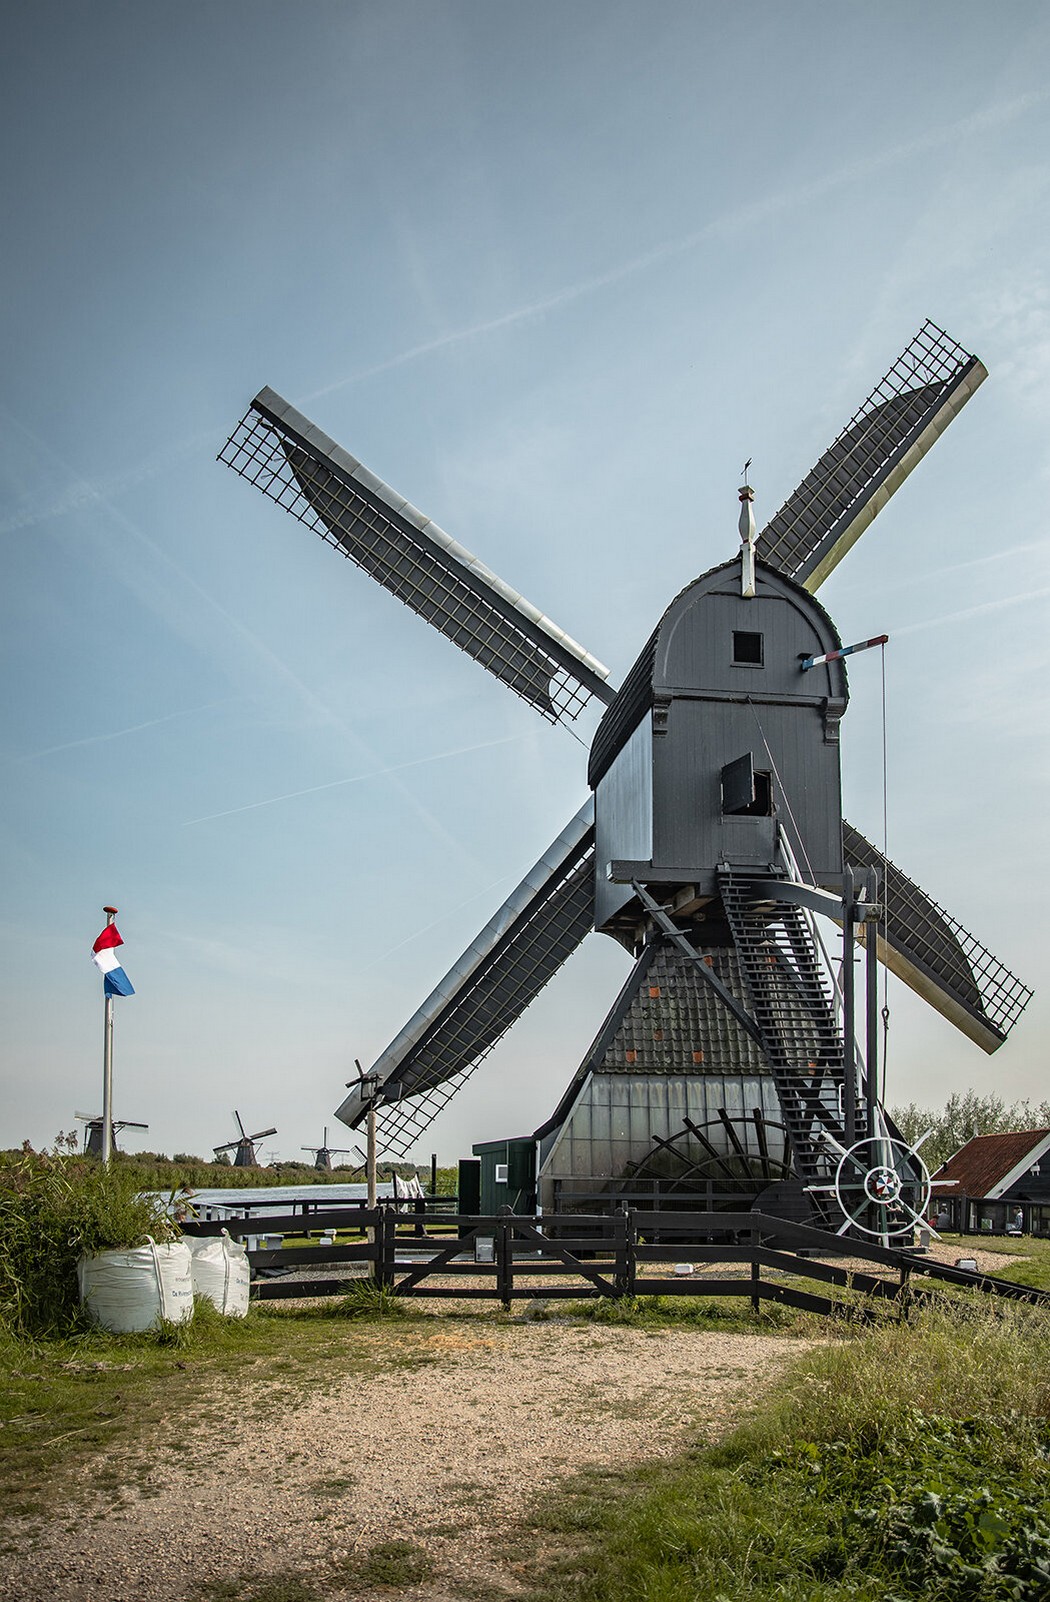 Киндердейк — край ветряных мельниц Голландия,Киндердейк,мельницы,Нидерланды